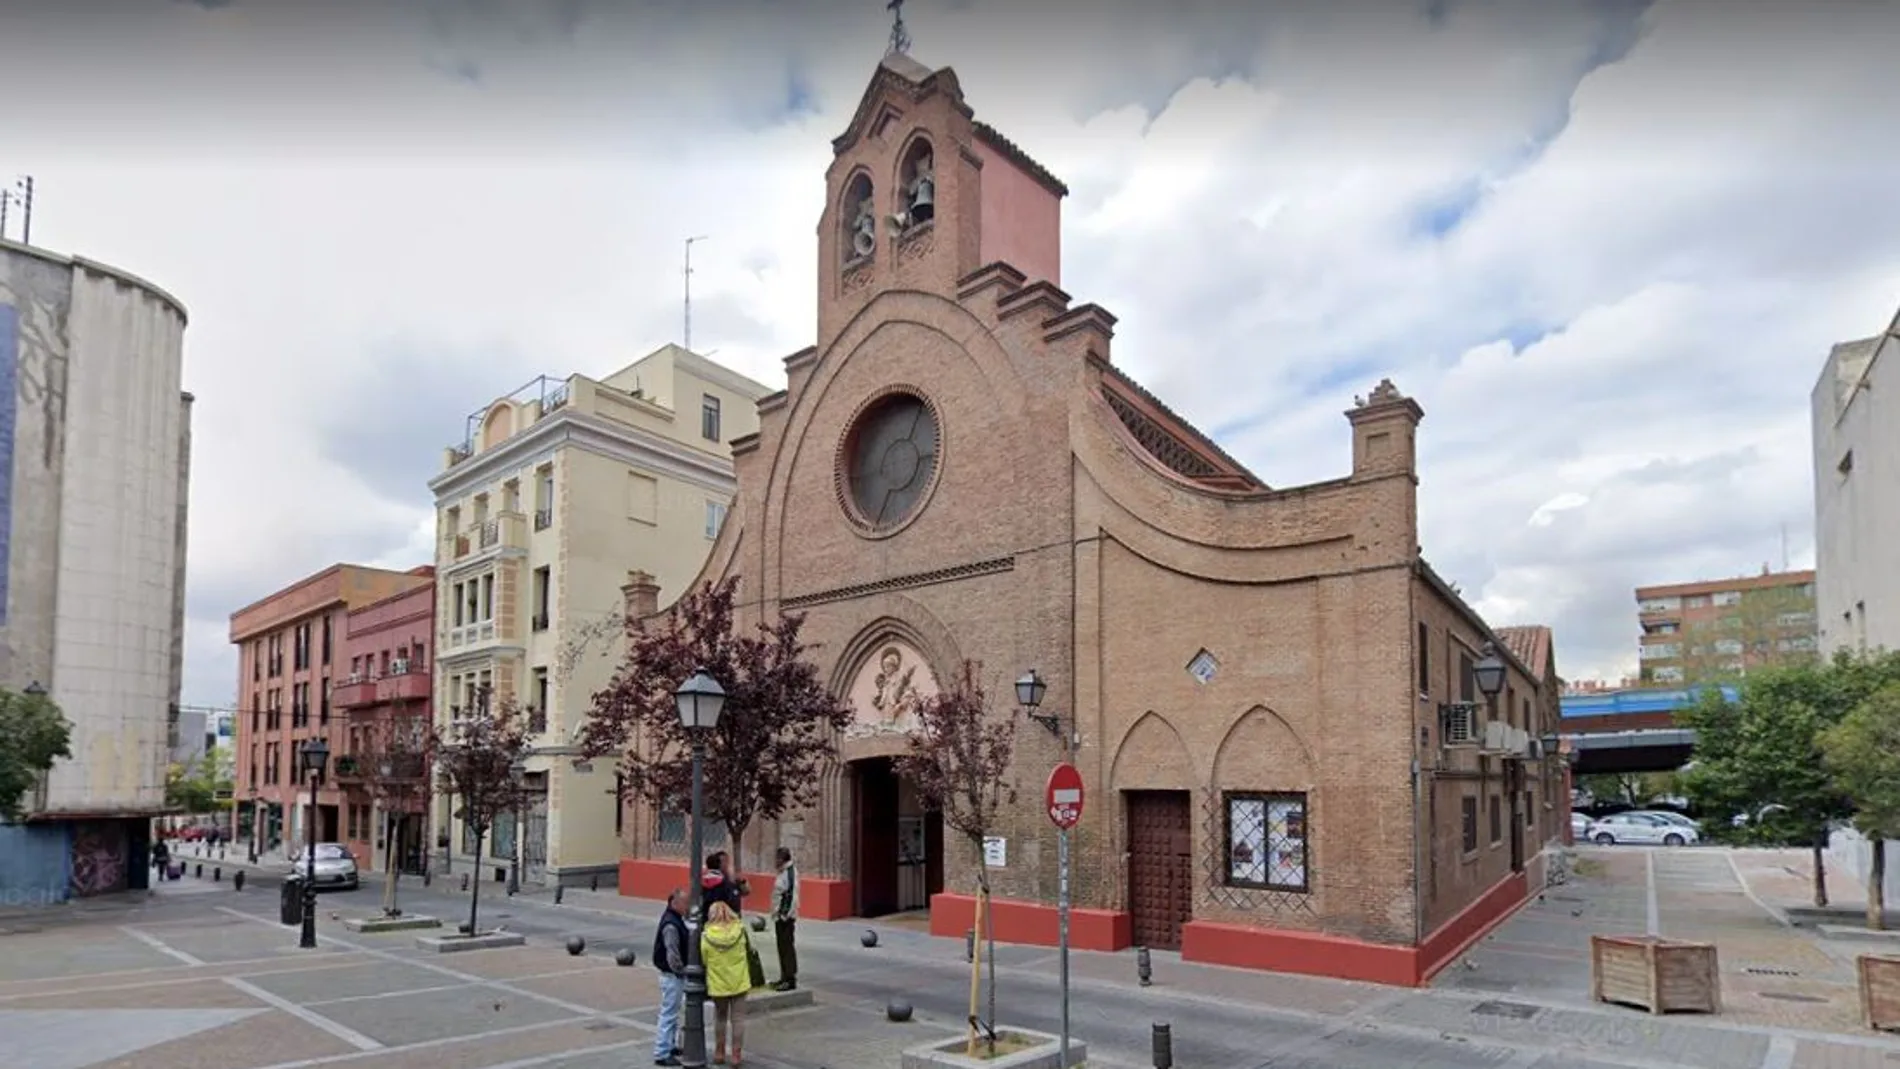 Fachada de la iglesia San Ramón Nonato, en el número 10 de la calle Melquiades Biencinto, Puente de Vallecas. Madrid